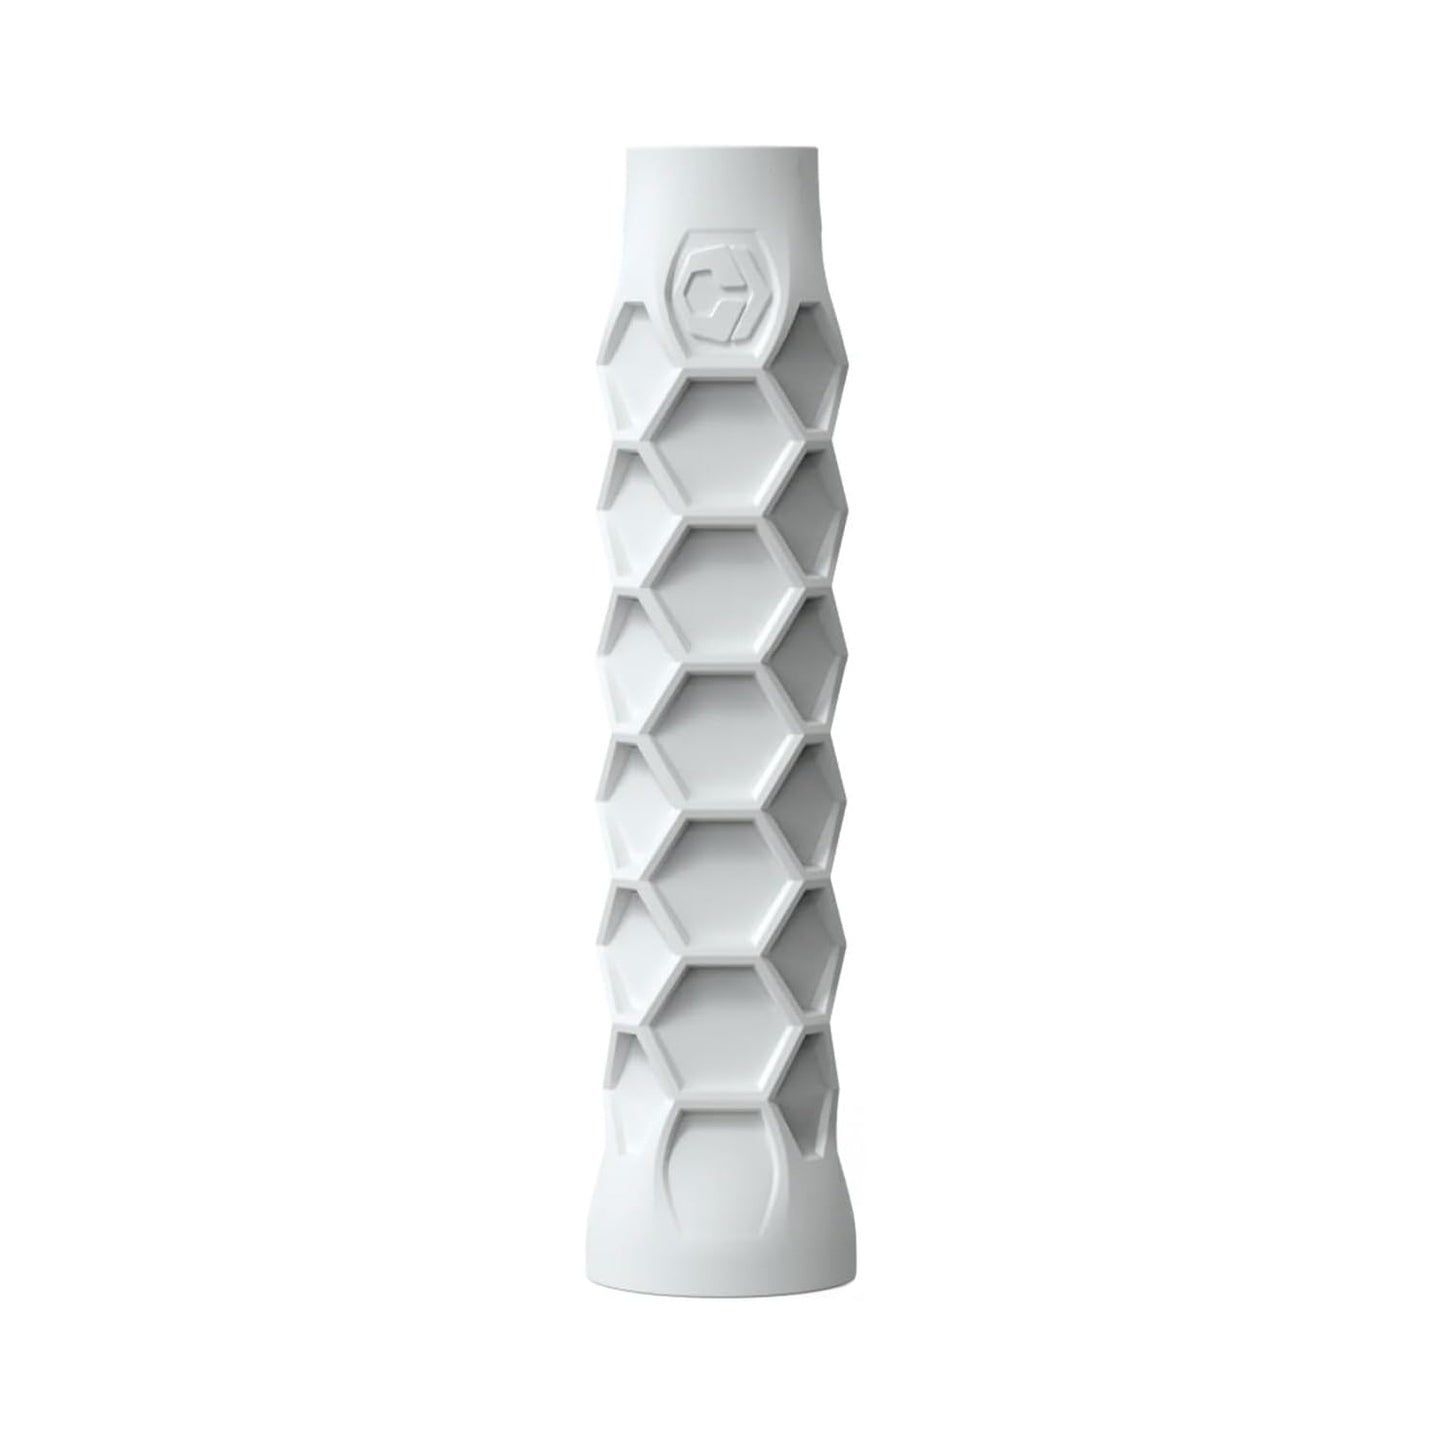 Beach Tennis Grip - 6 Inches Long - Regular Soft Feel - White